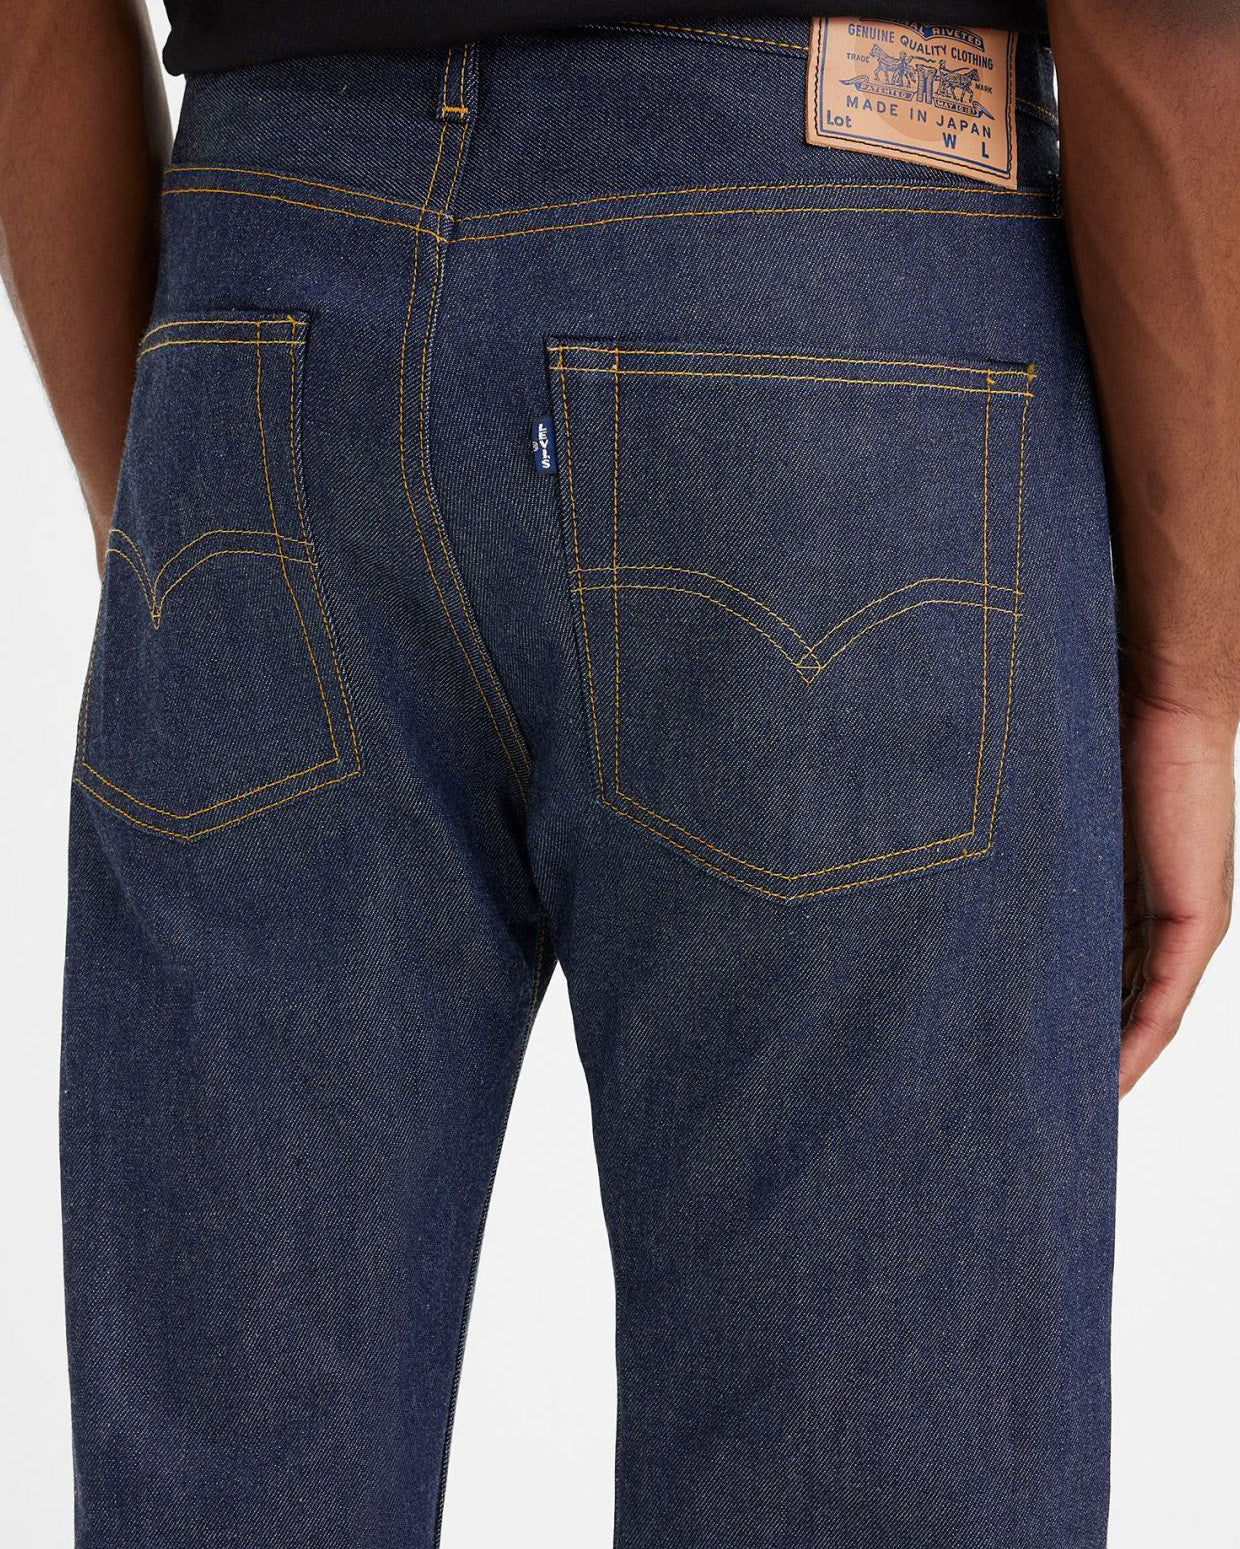 Levi's® Made In Japan 1980's 501 Mens Selvedge Jeans - MIJ Dark Rinse ...